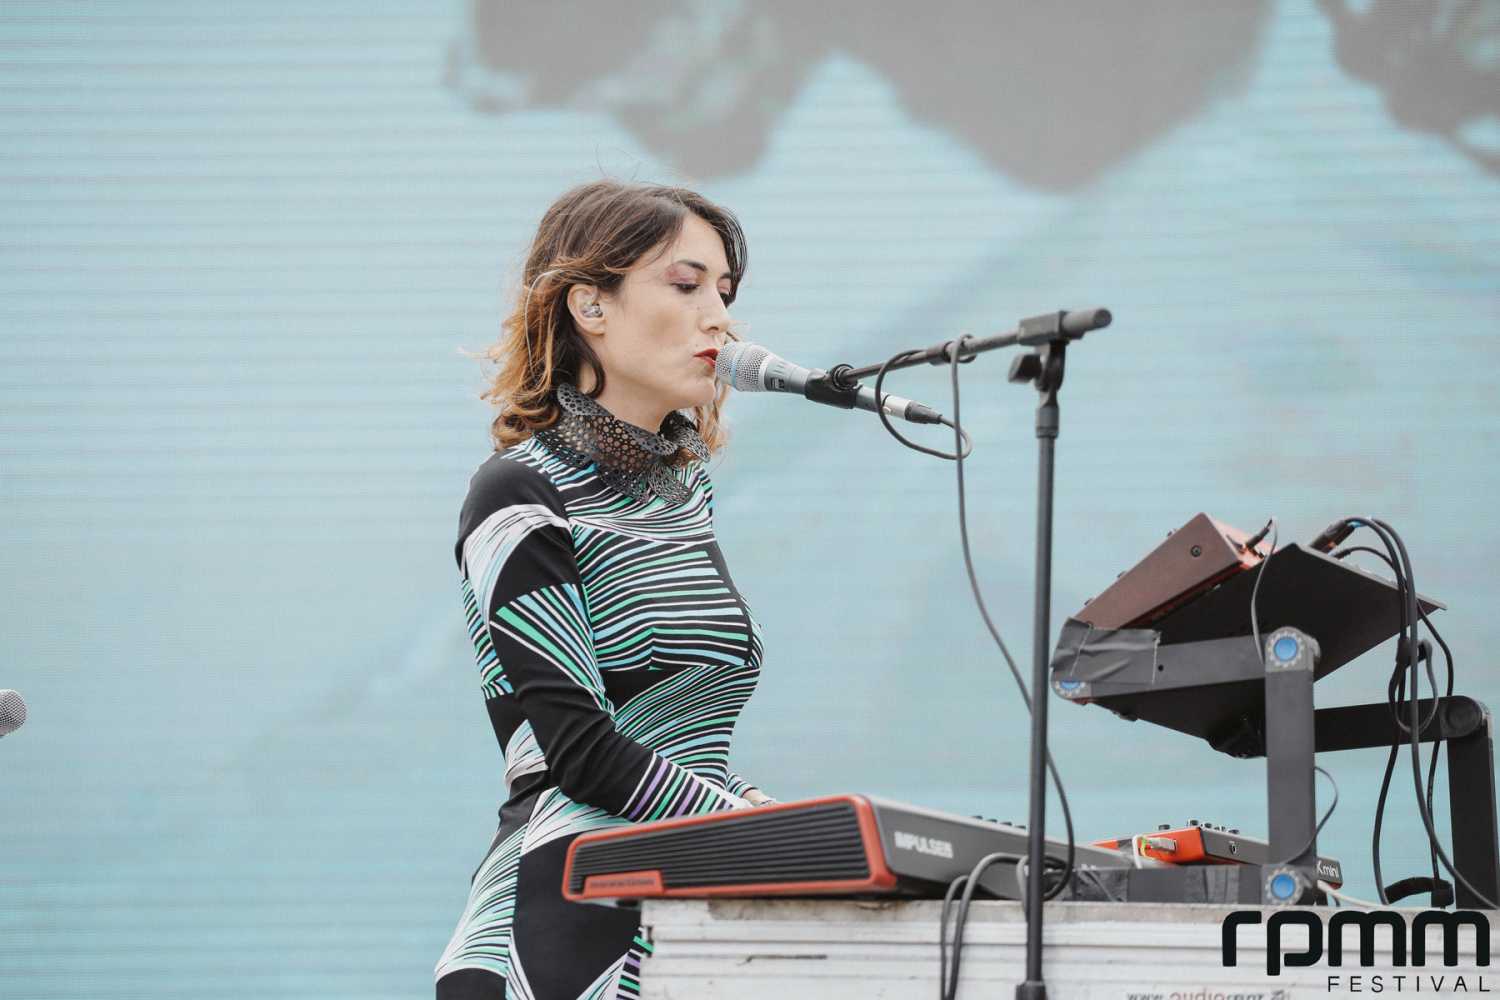 Francesca Lombardo plays the inaugural RPMM Festival in Porto